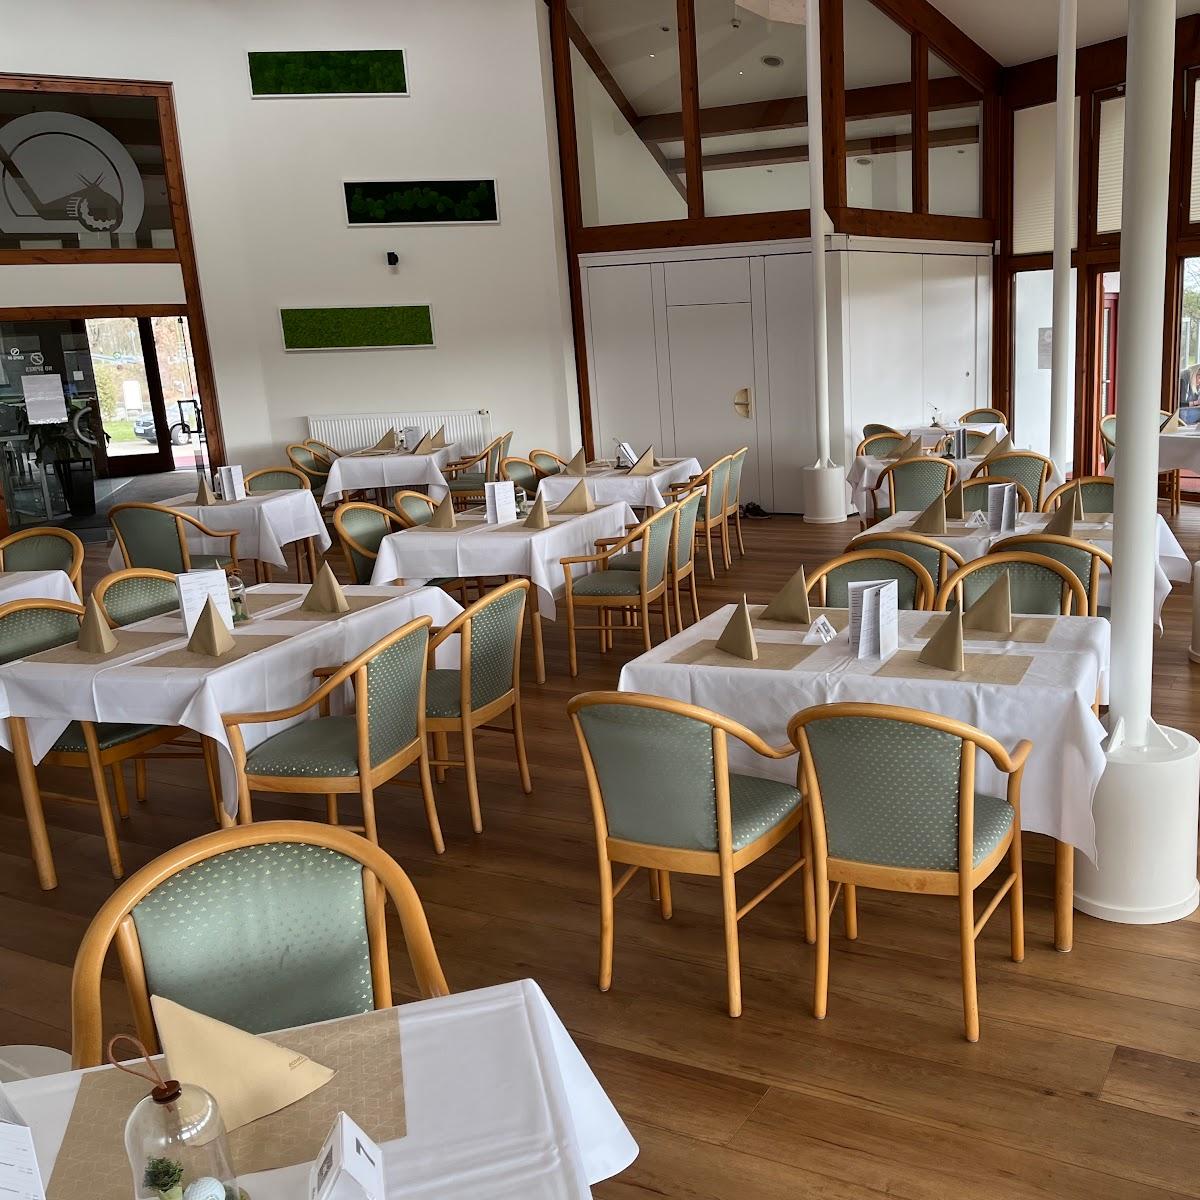 Restaurant "Birdie Familien- & Golfrestaurant" in Gifhorn